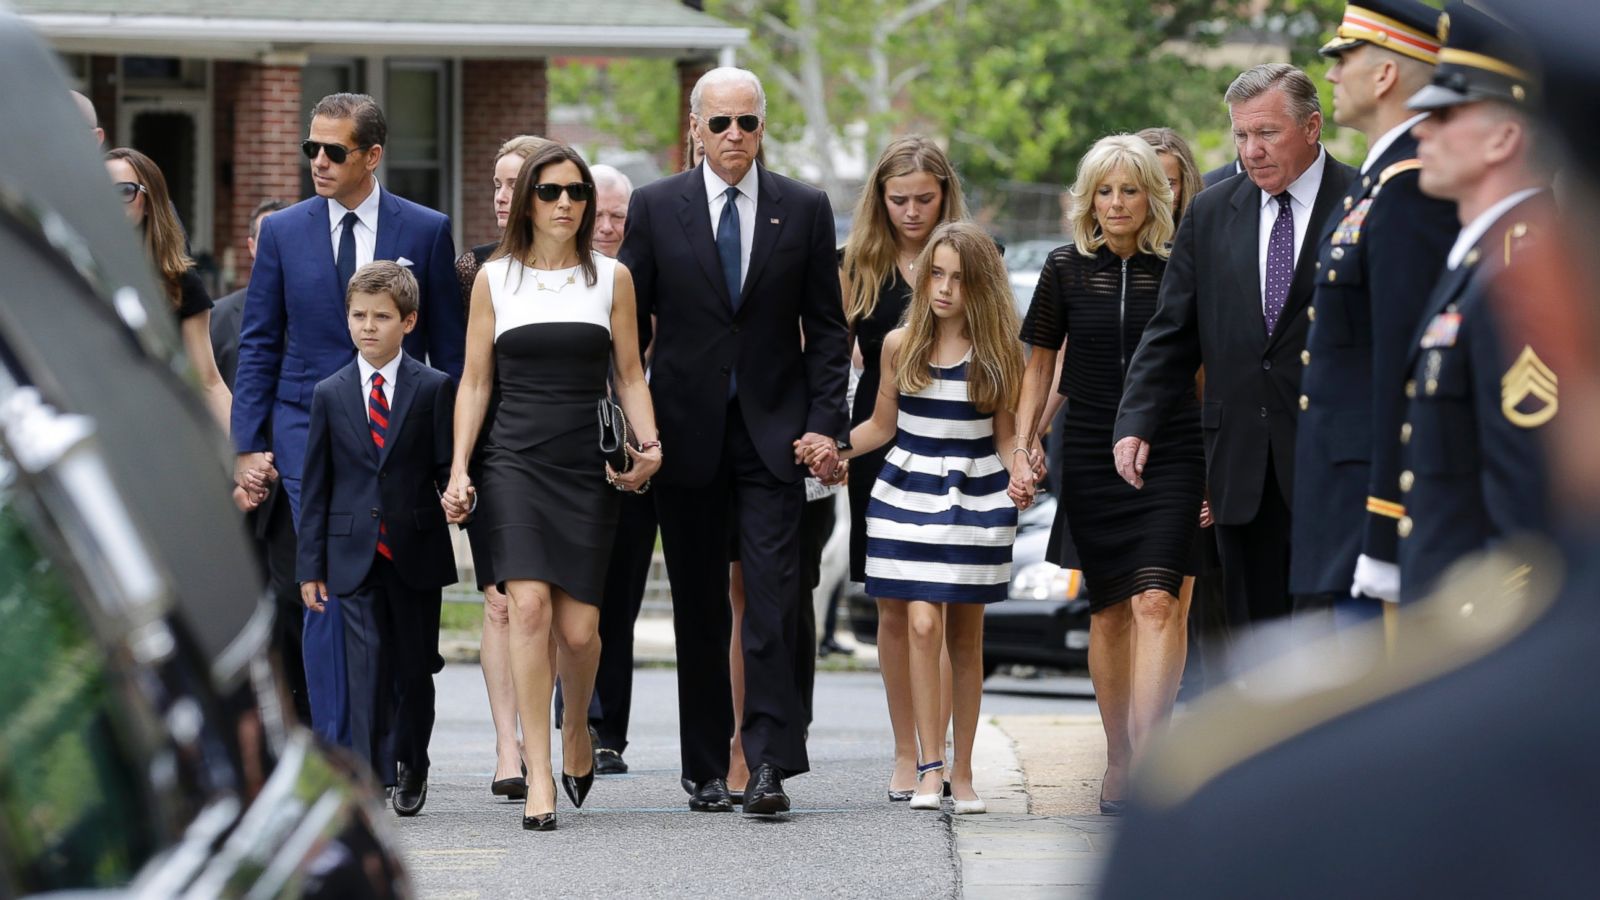 Beau Biden's Funeral in Delaware - ABC News